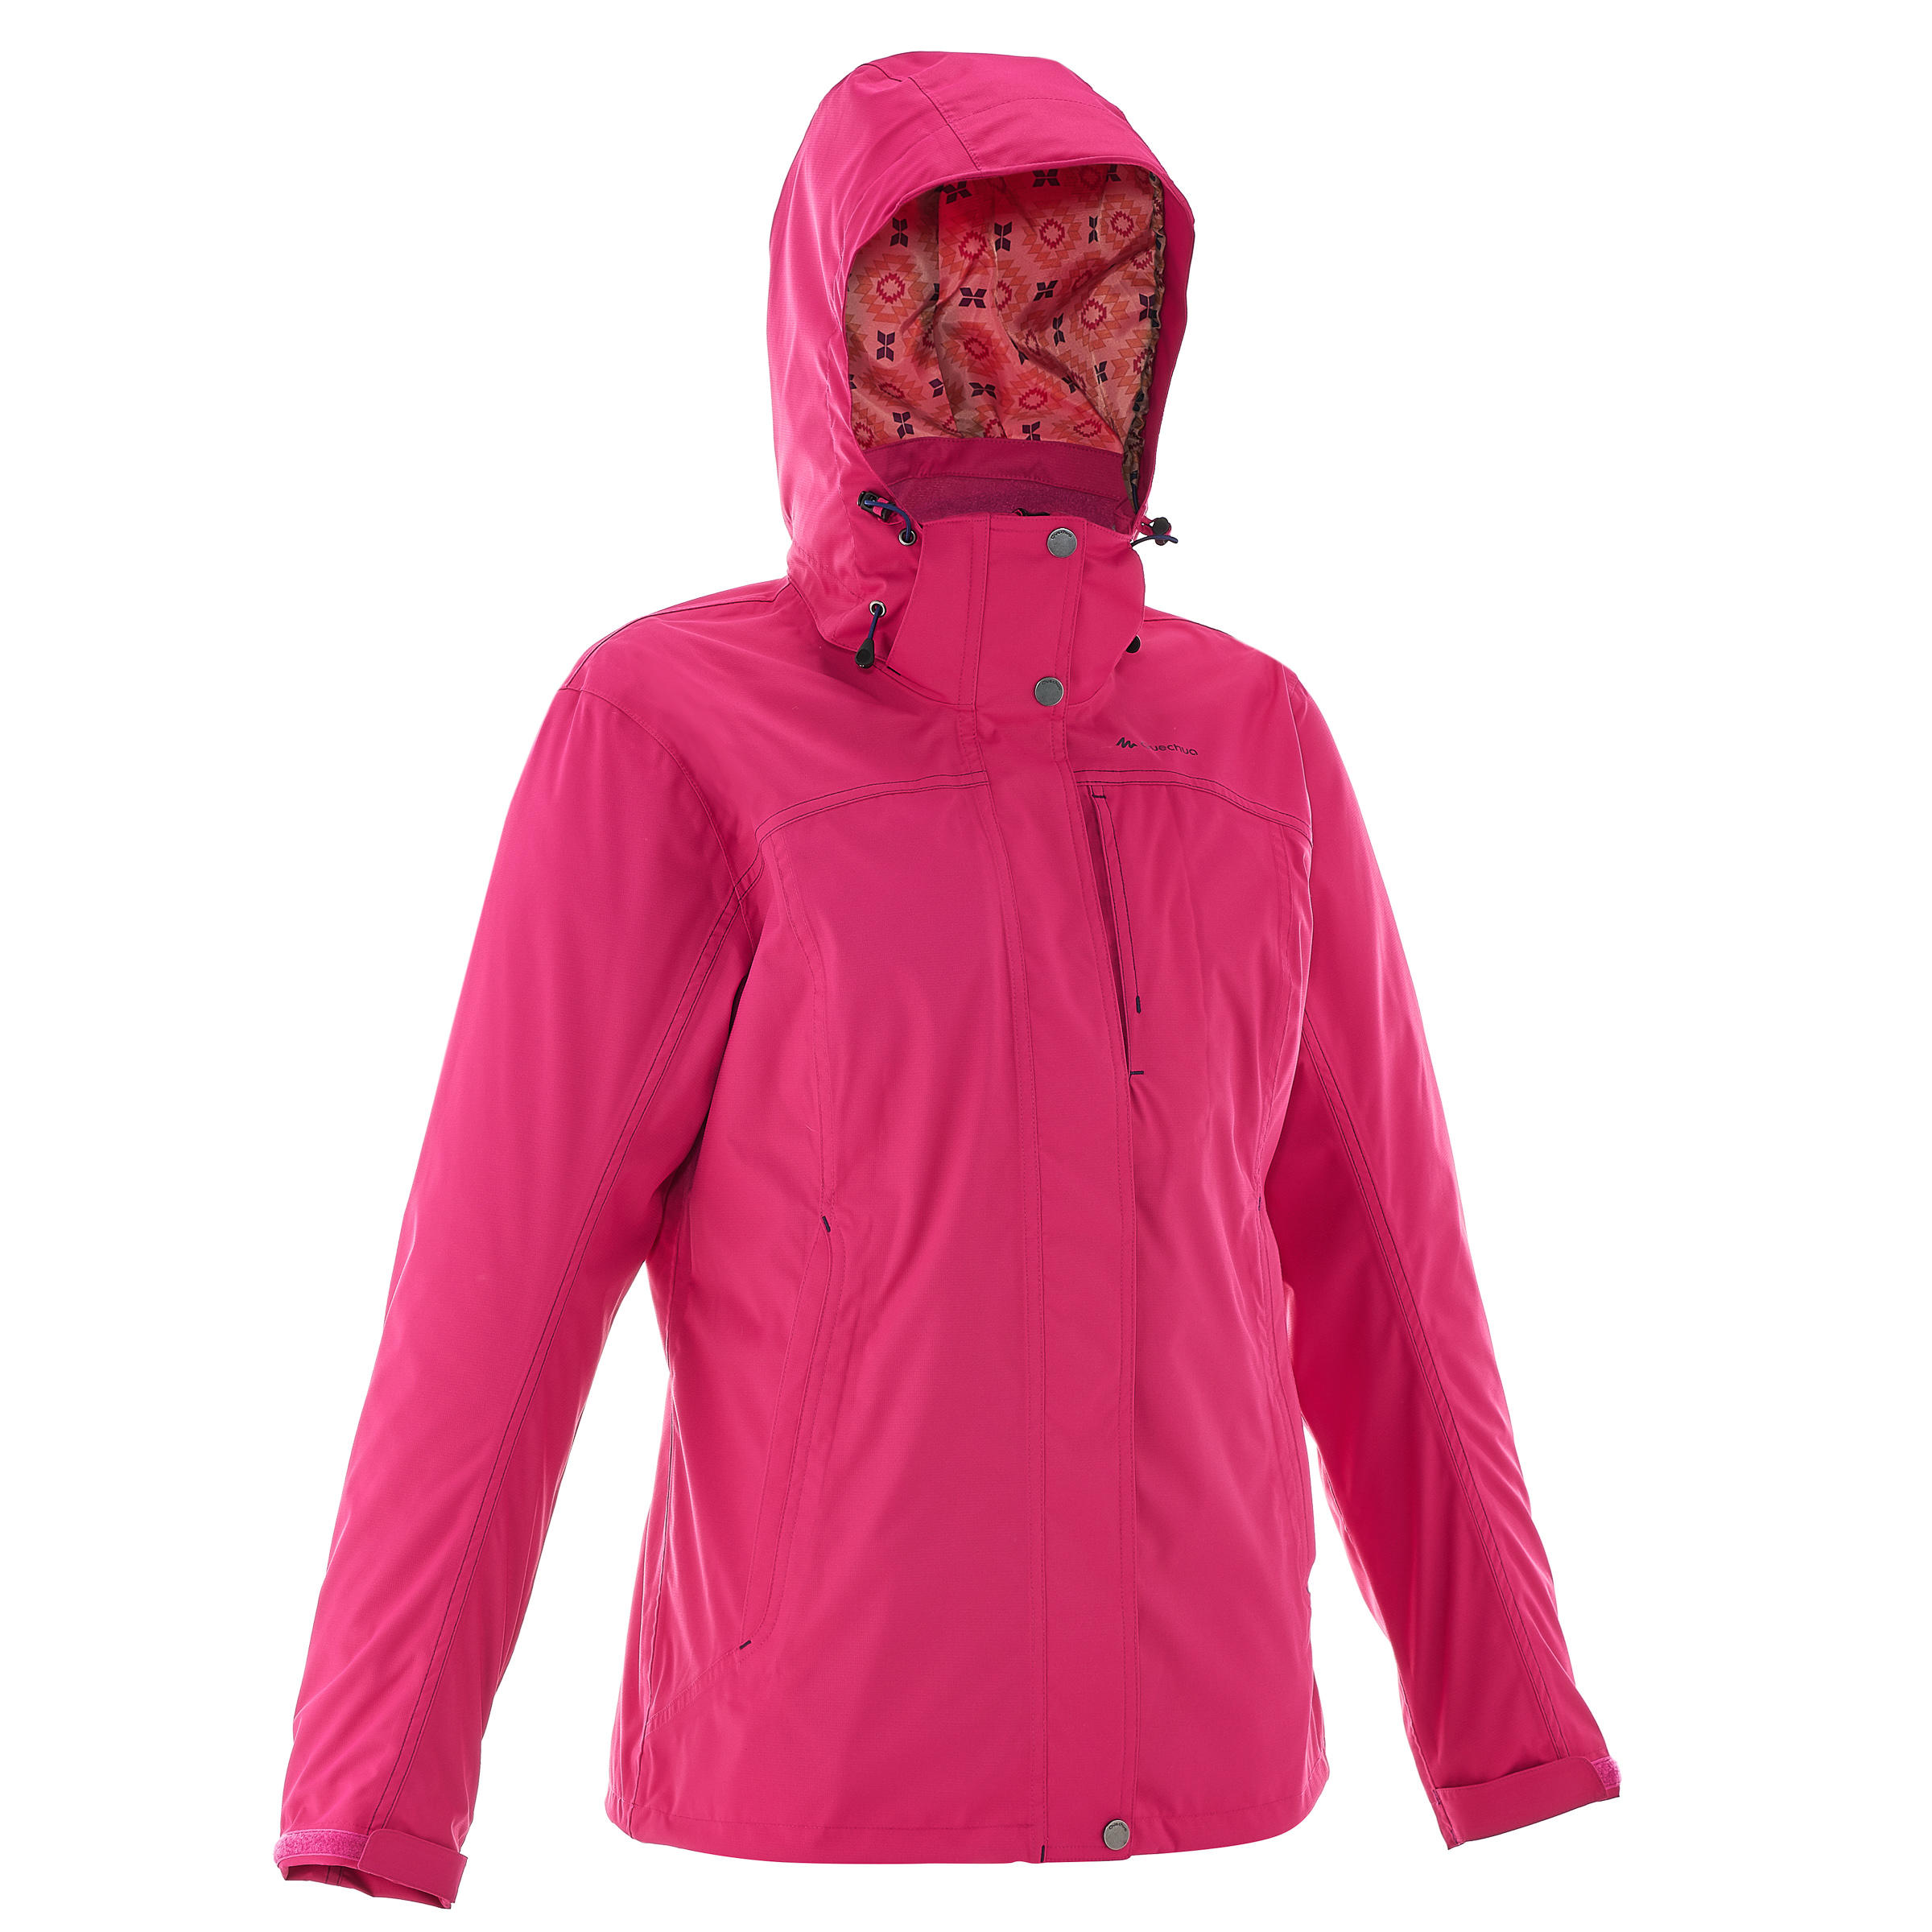 QUECHUA RainWarm 300 Women's Hiking 3-in-1 Jacket - Pink